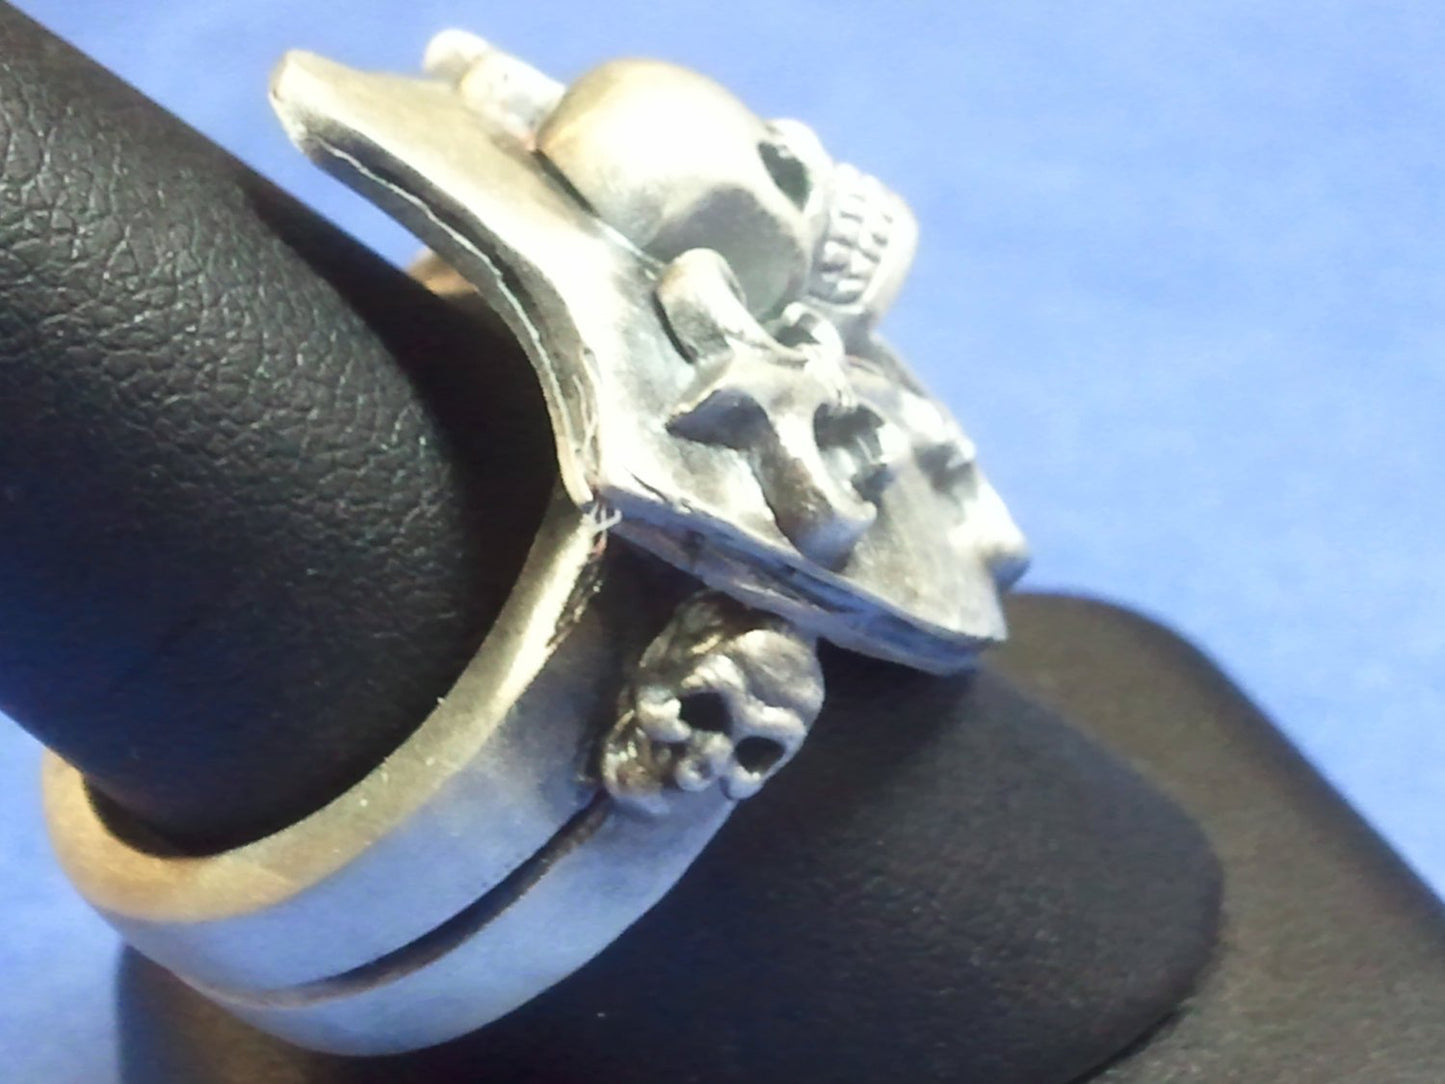 Hammered Crest Shield Skull & Fleur de Lis .925 Sterling Silver Ring.-UDINC0025